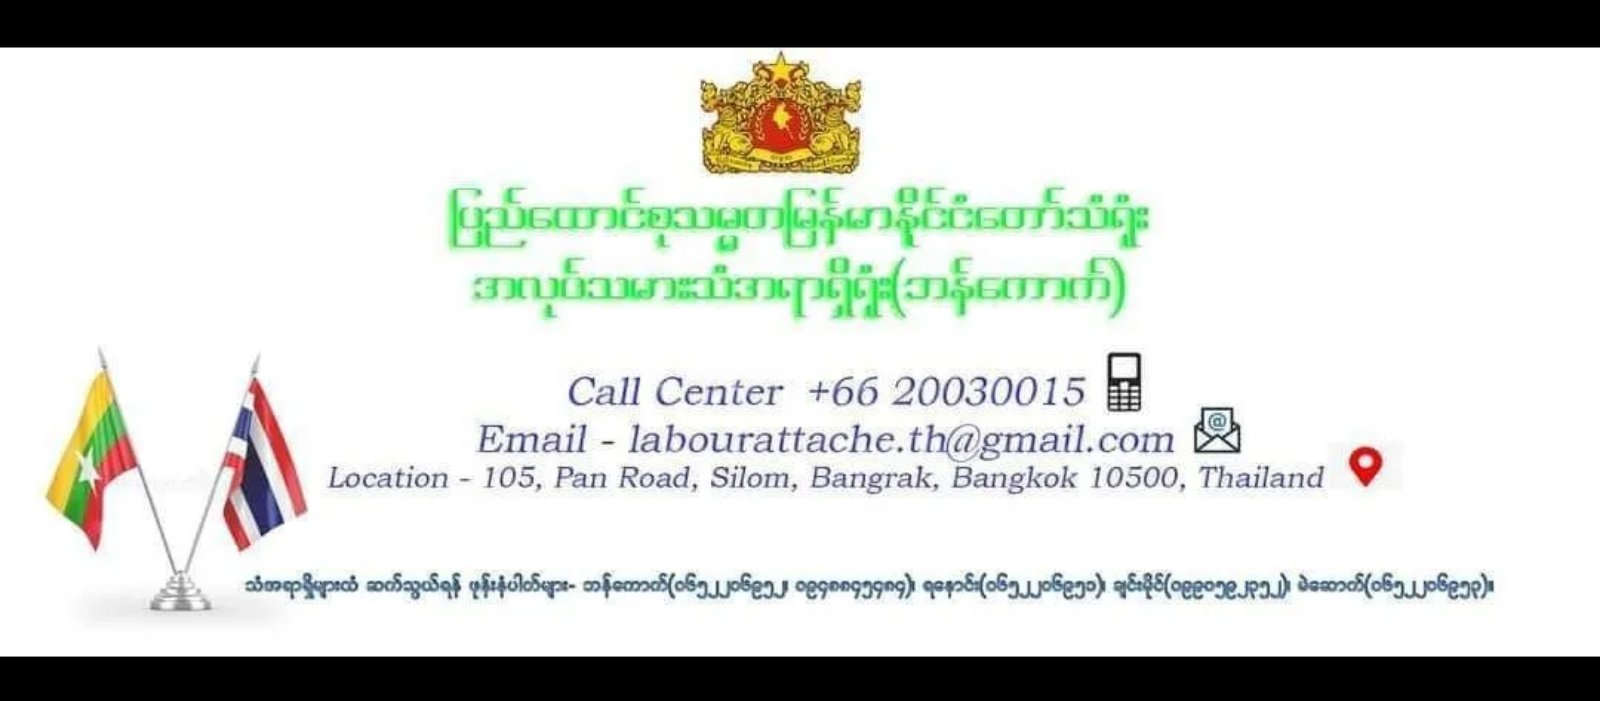 ထိုင်းနိုင်ငံမှ မြန်မာအလုပ်သမားသံအရာရှိရုံးက အသိပေးထုတ်ပြန် ။